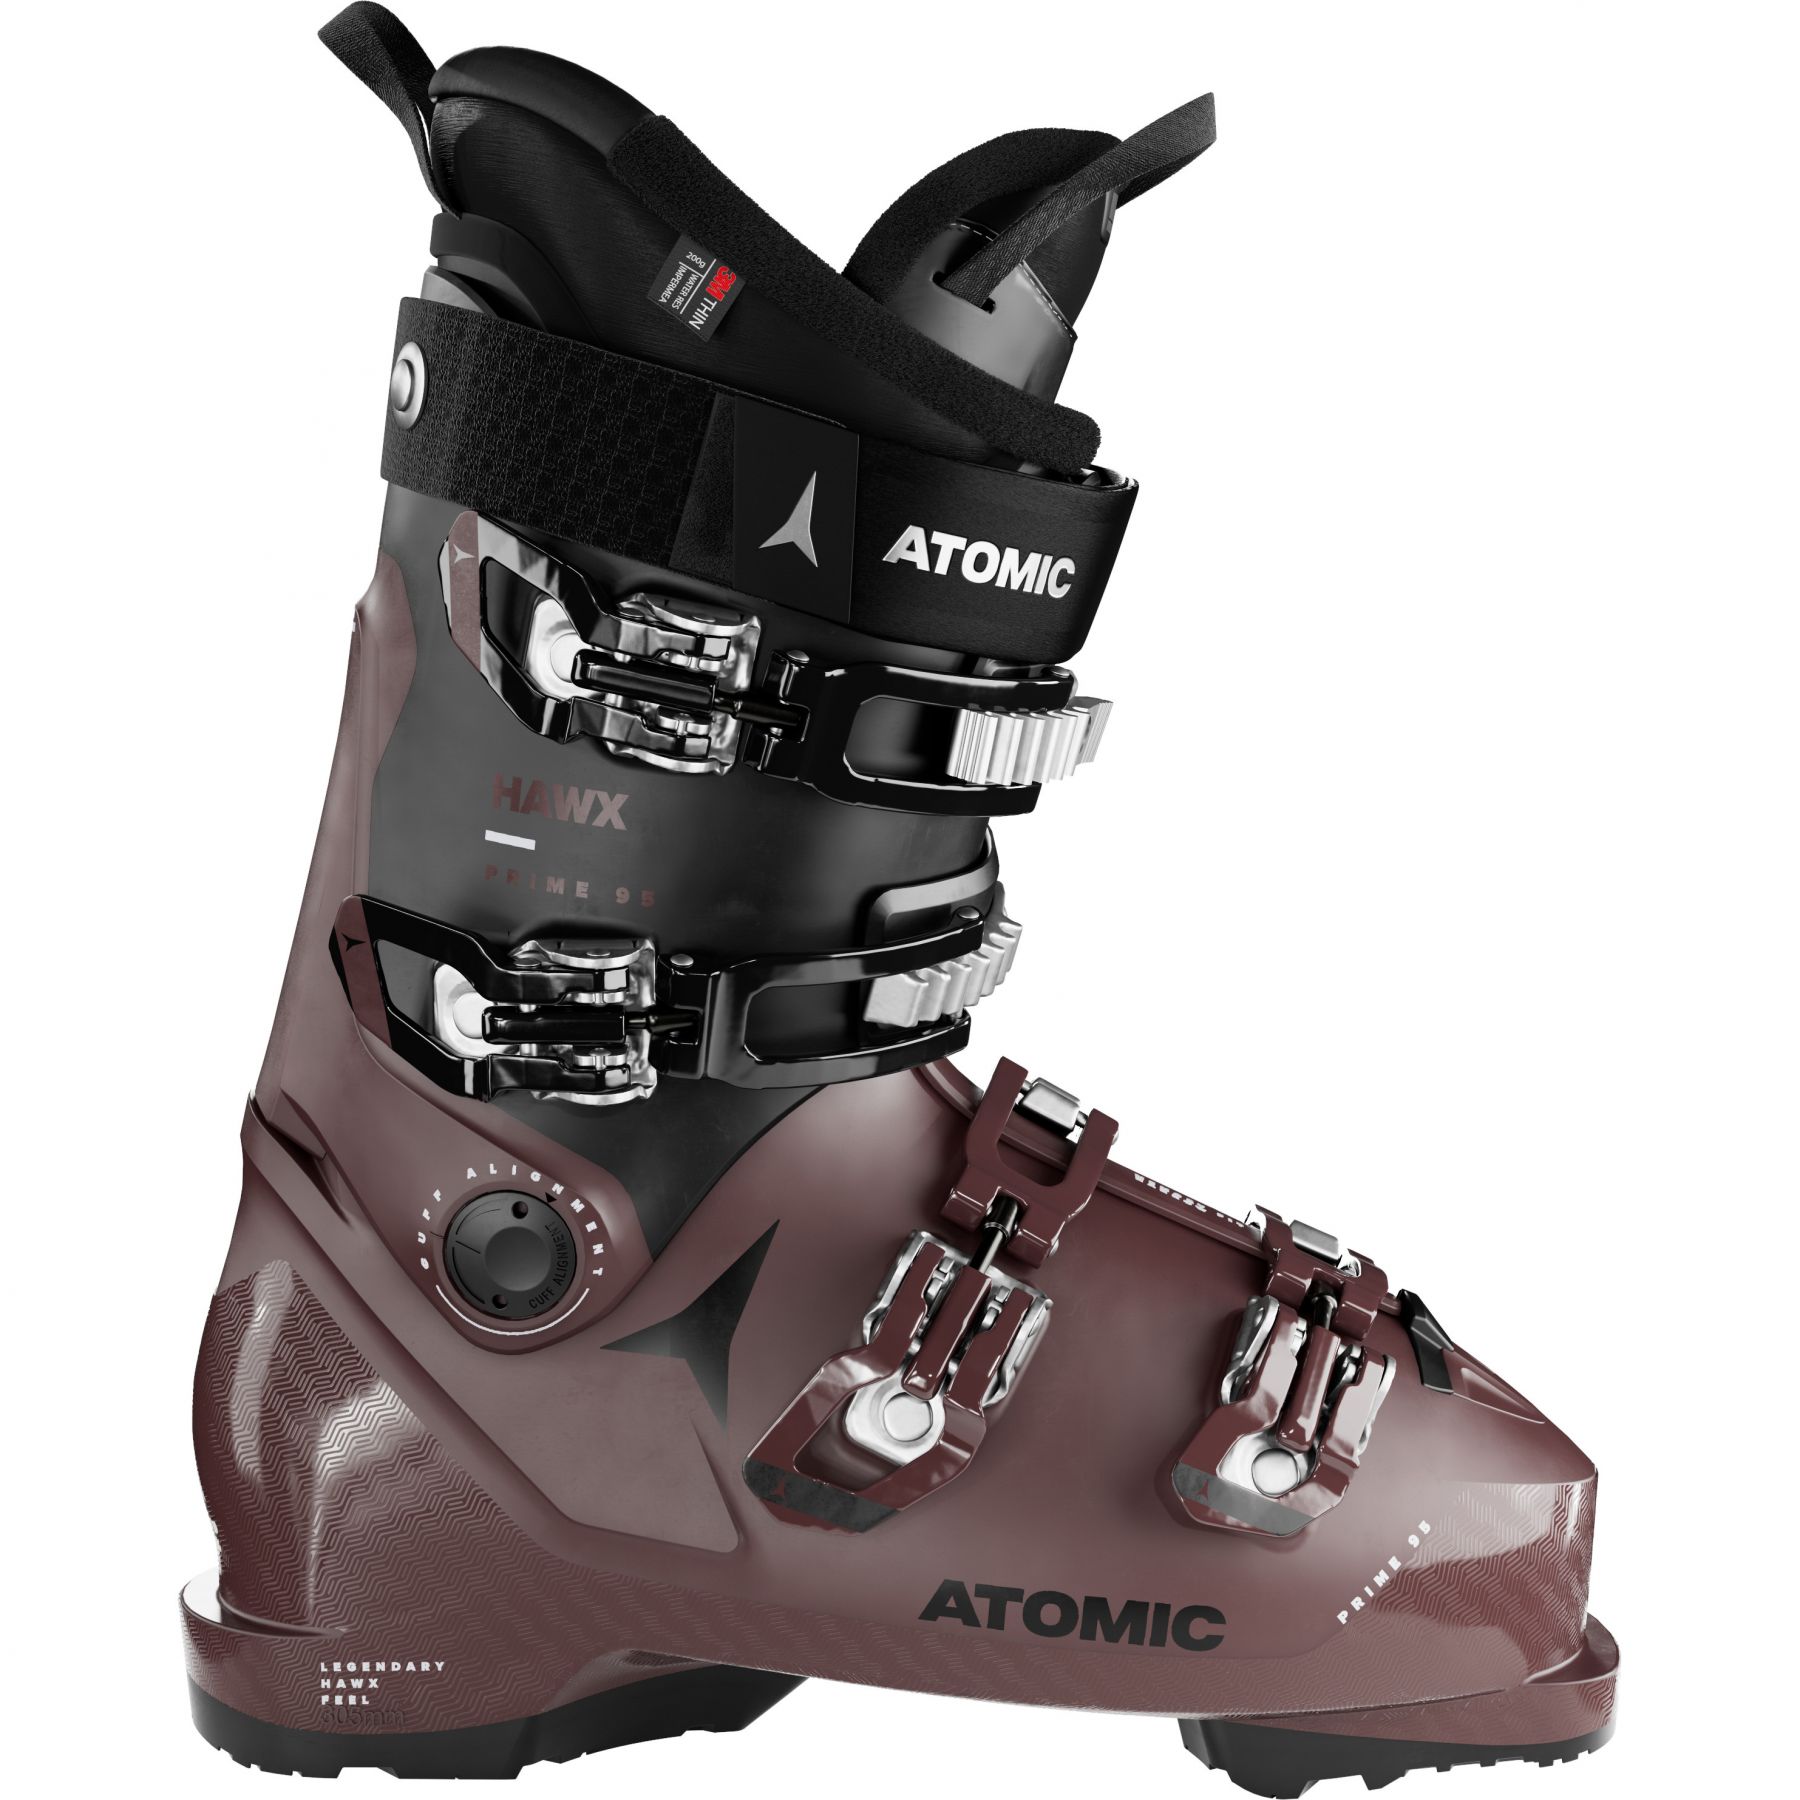 Billede af Atomic Hawx Prime 95 W GW, skistøvler, dame, brun/sort